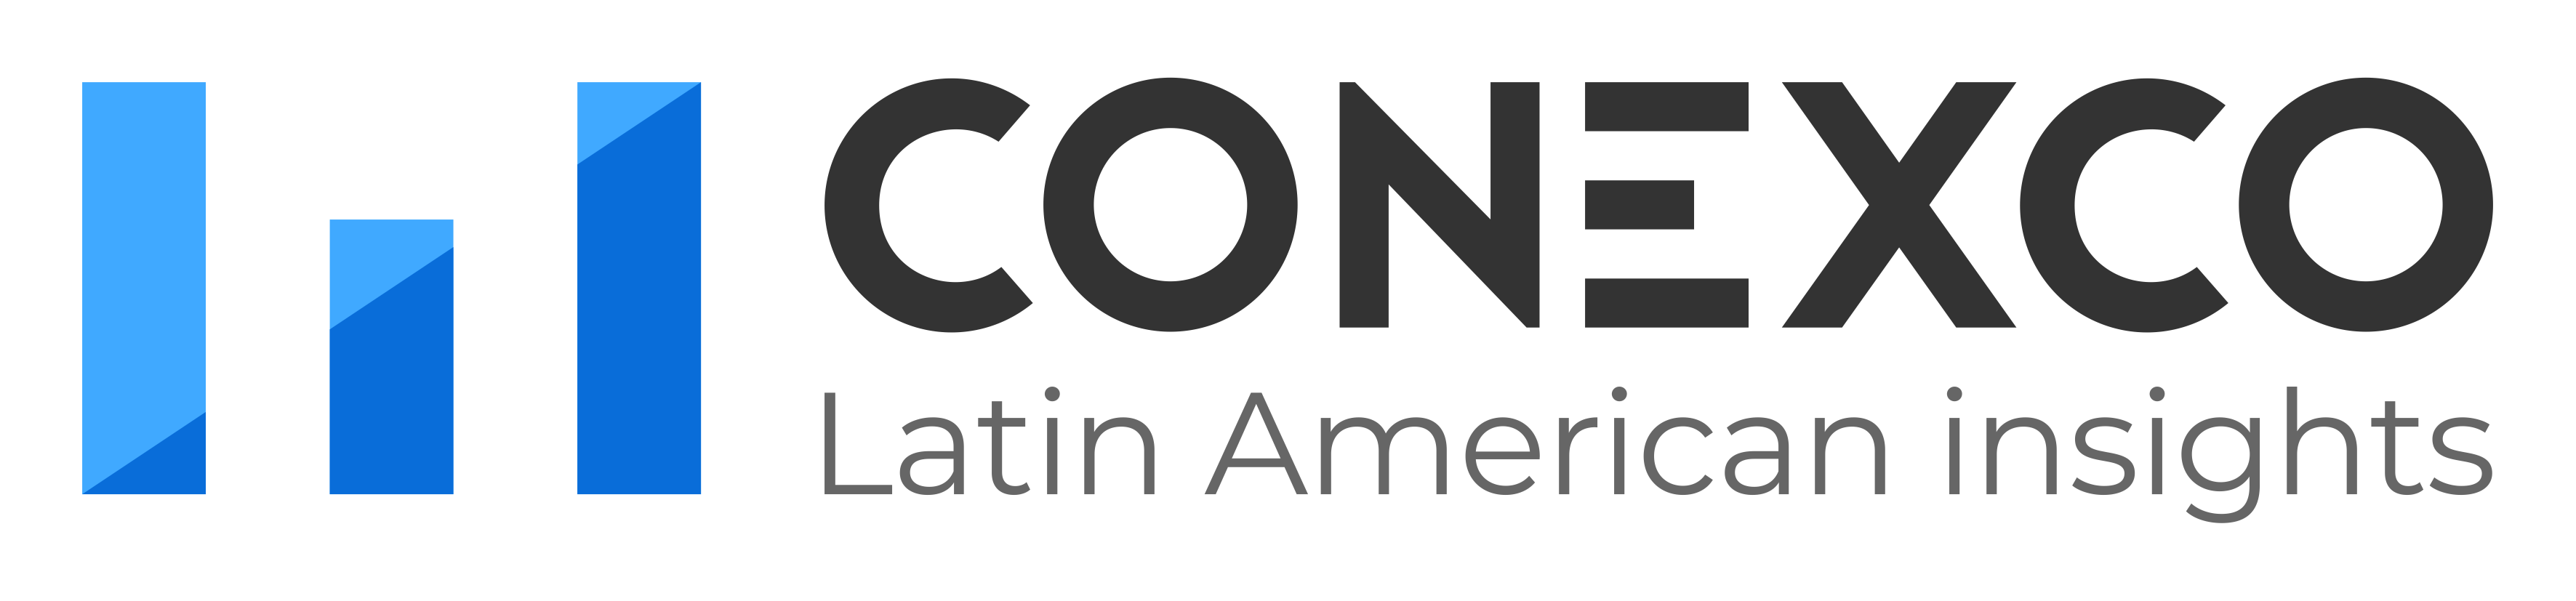 Conexco_Logo_on_the_Left-2